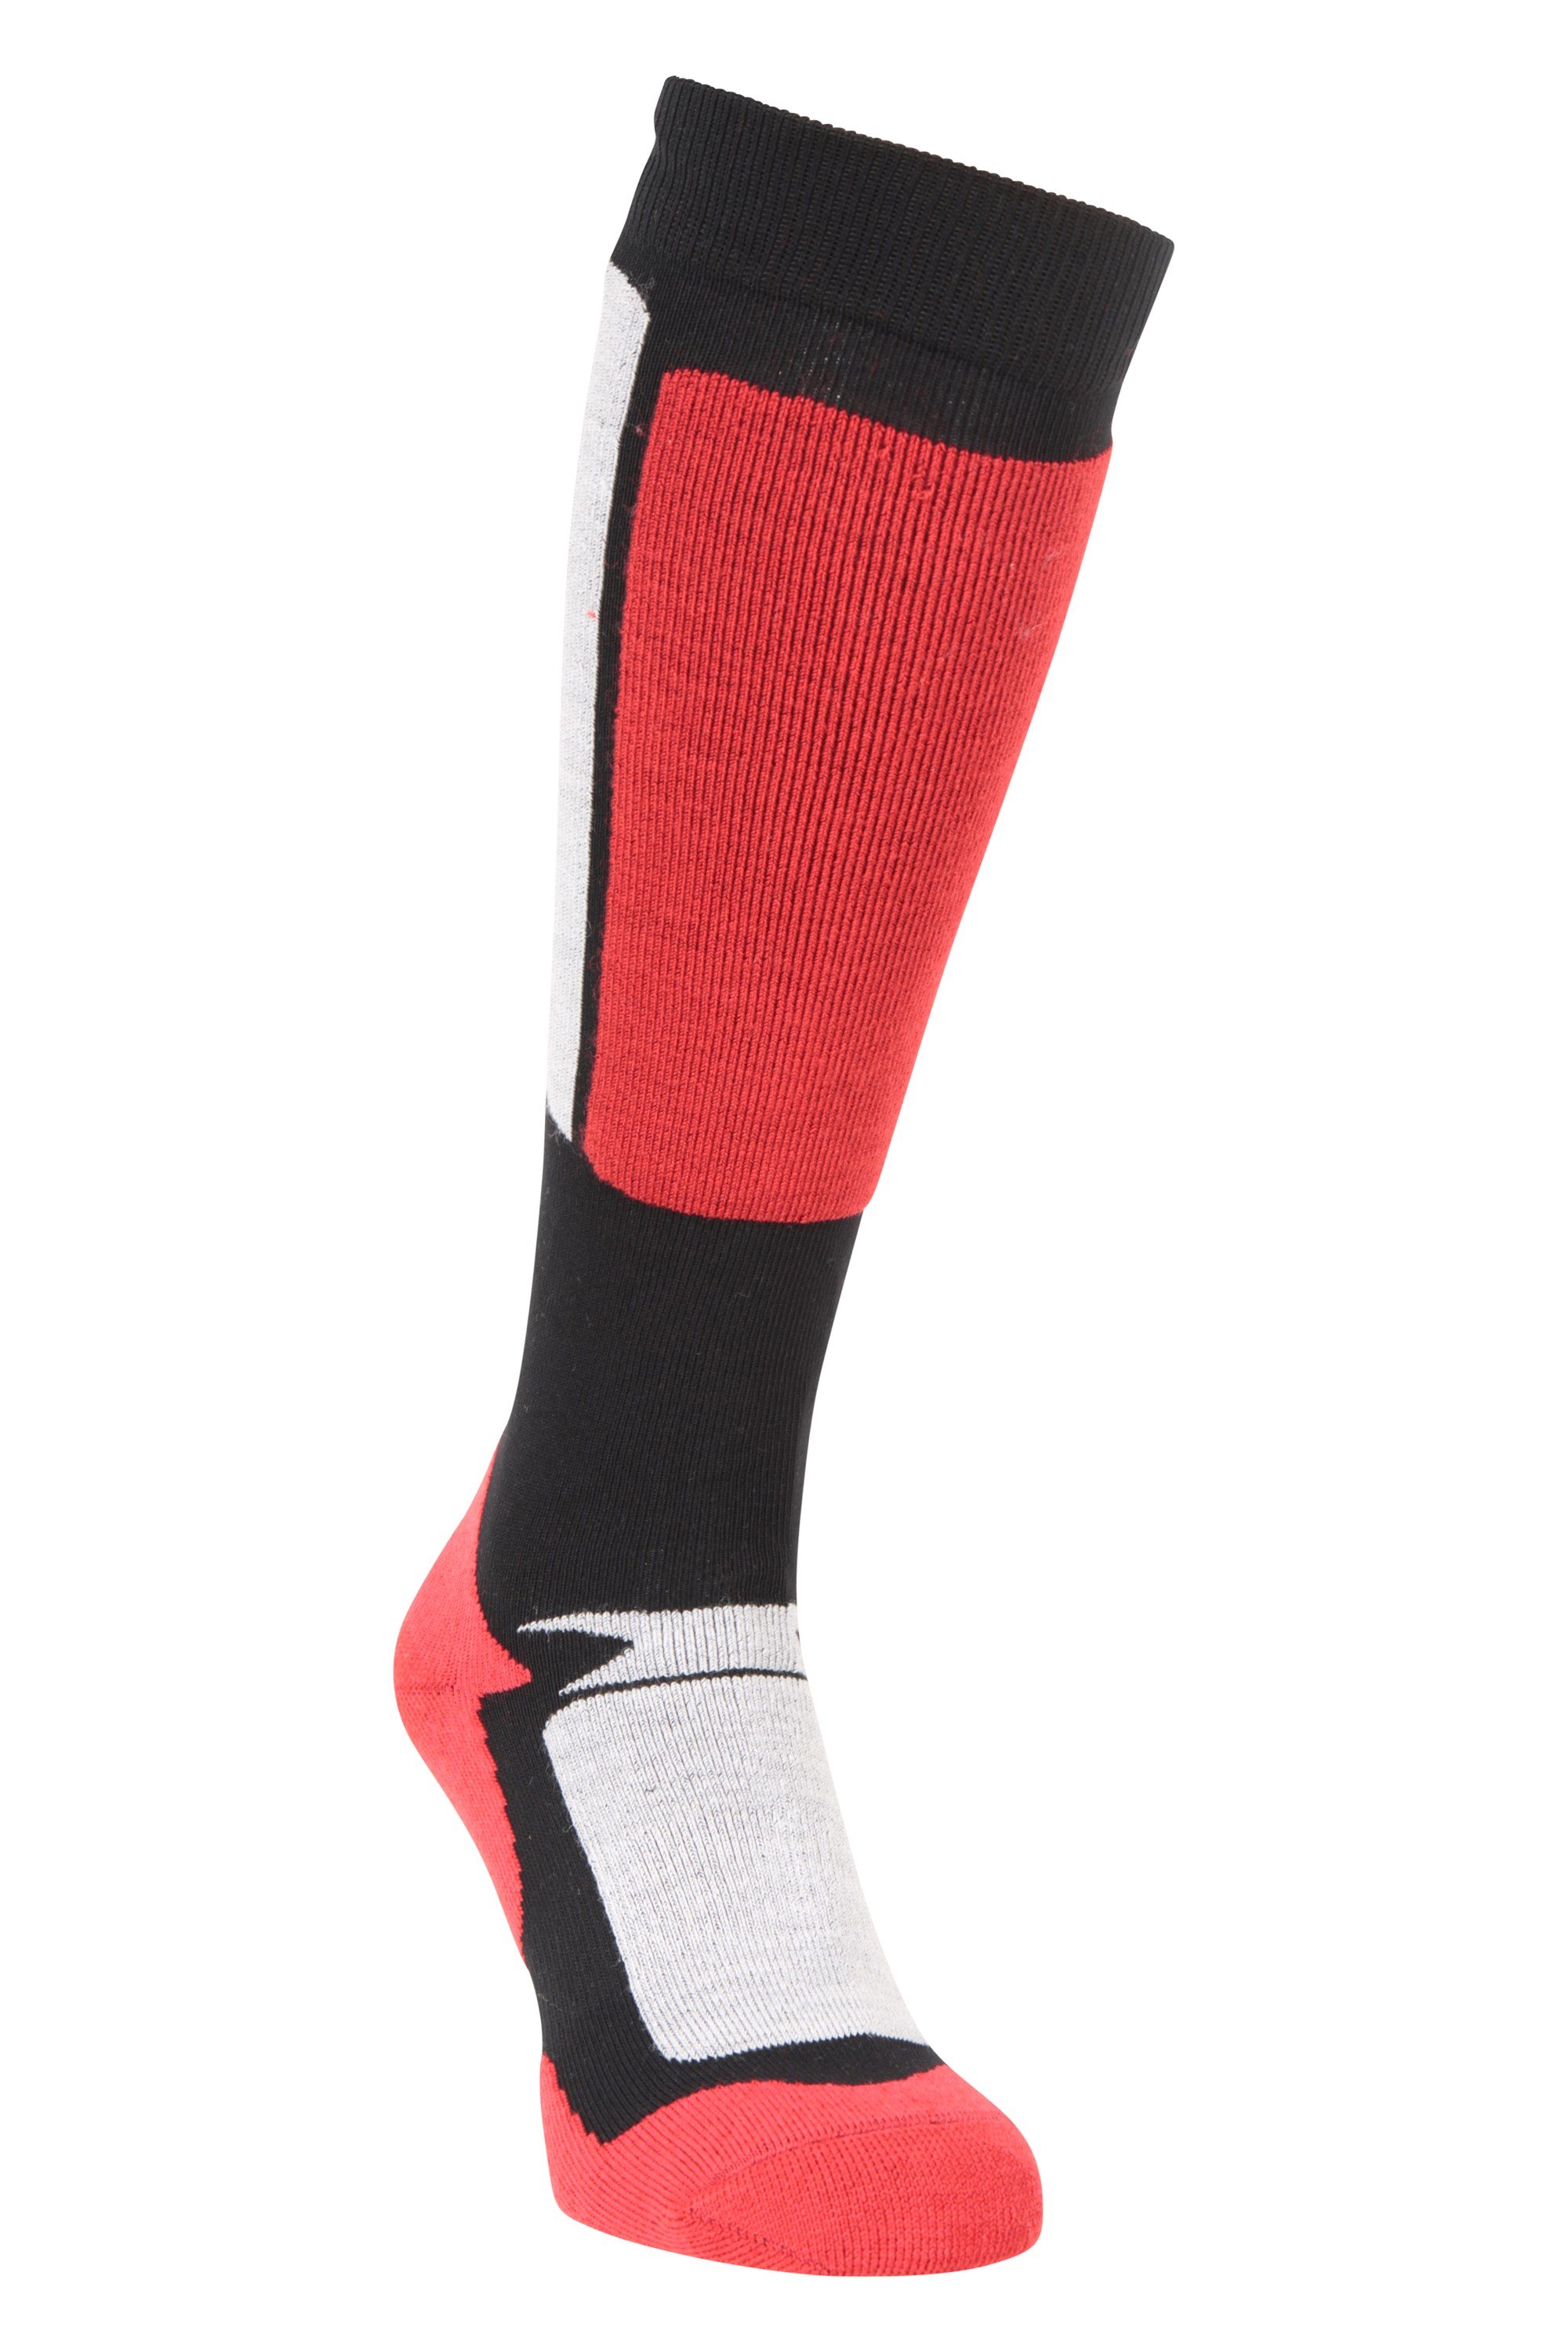 Extreme Mens Merino Thermal Ski Socks Red